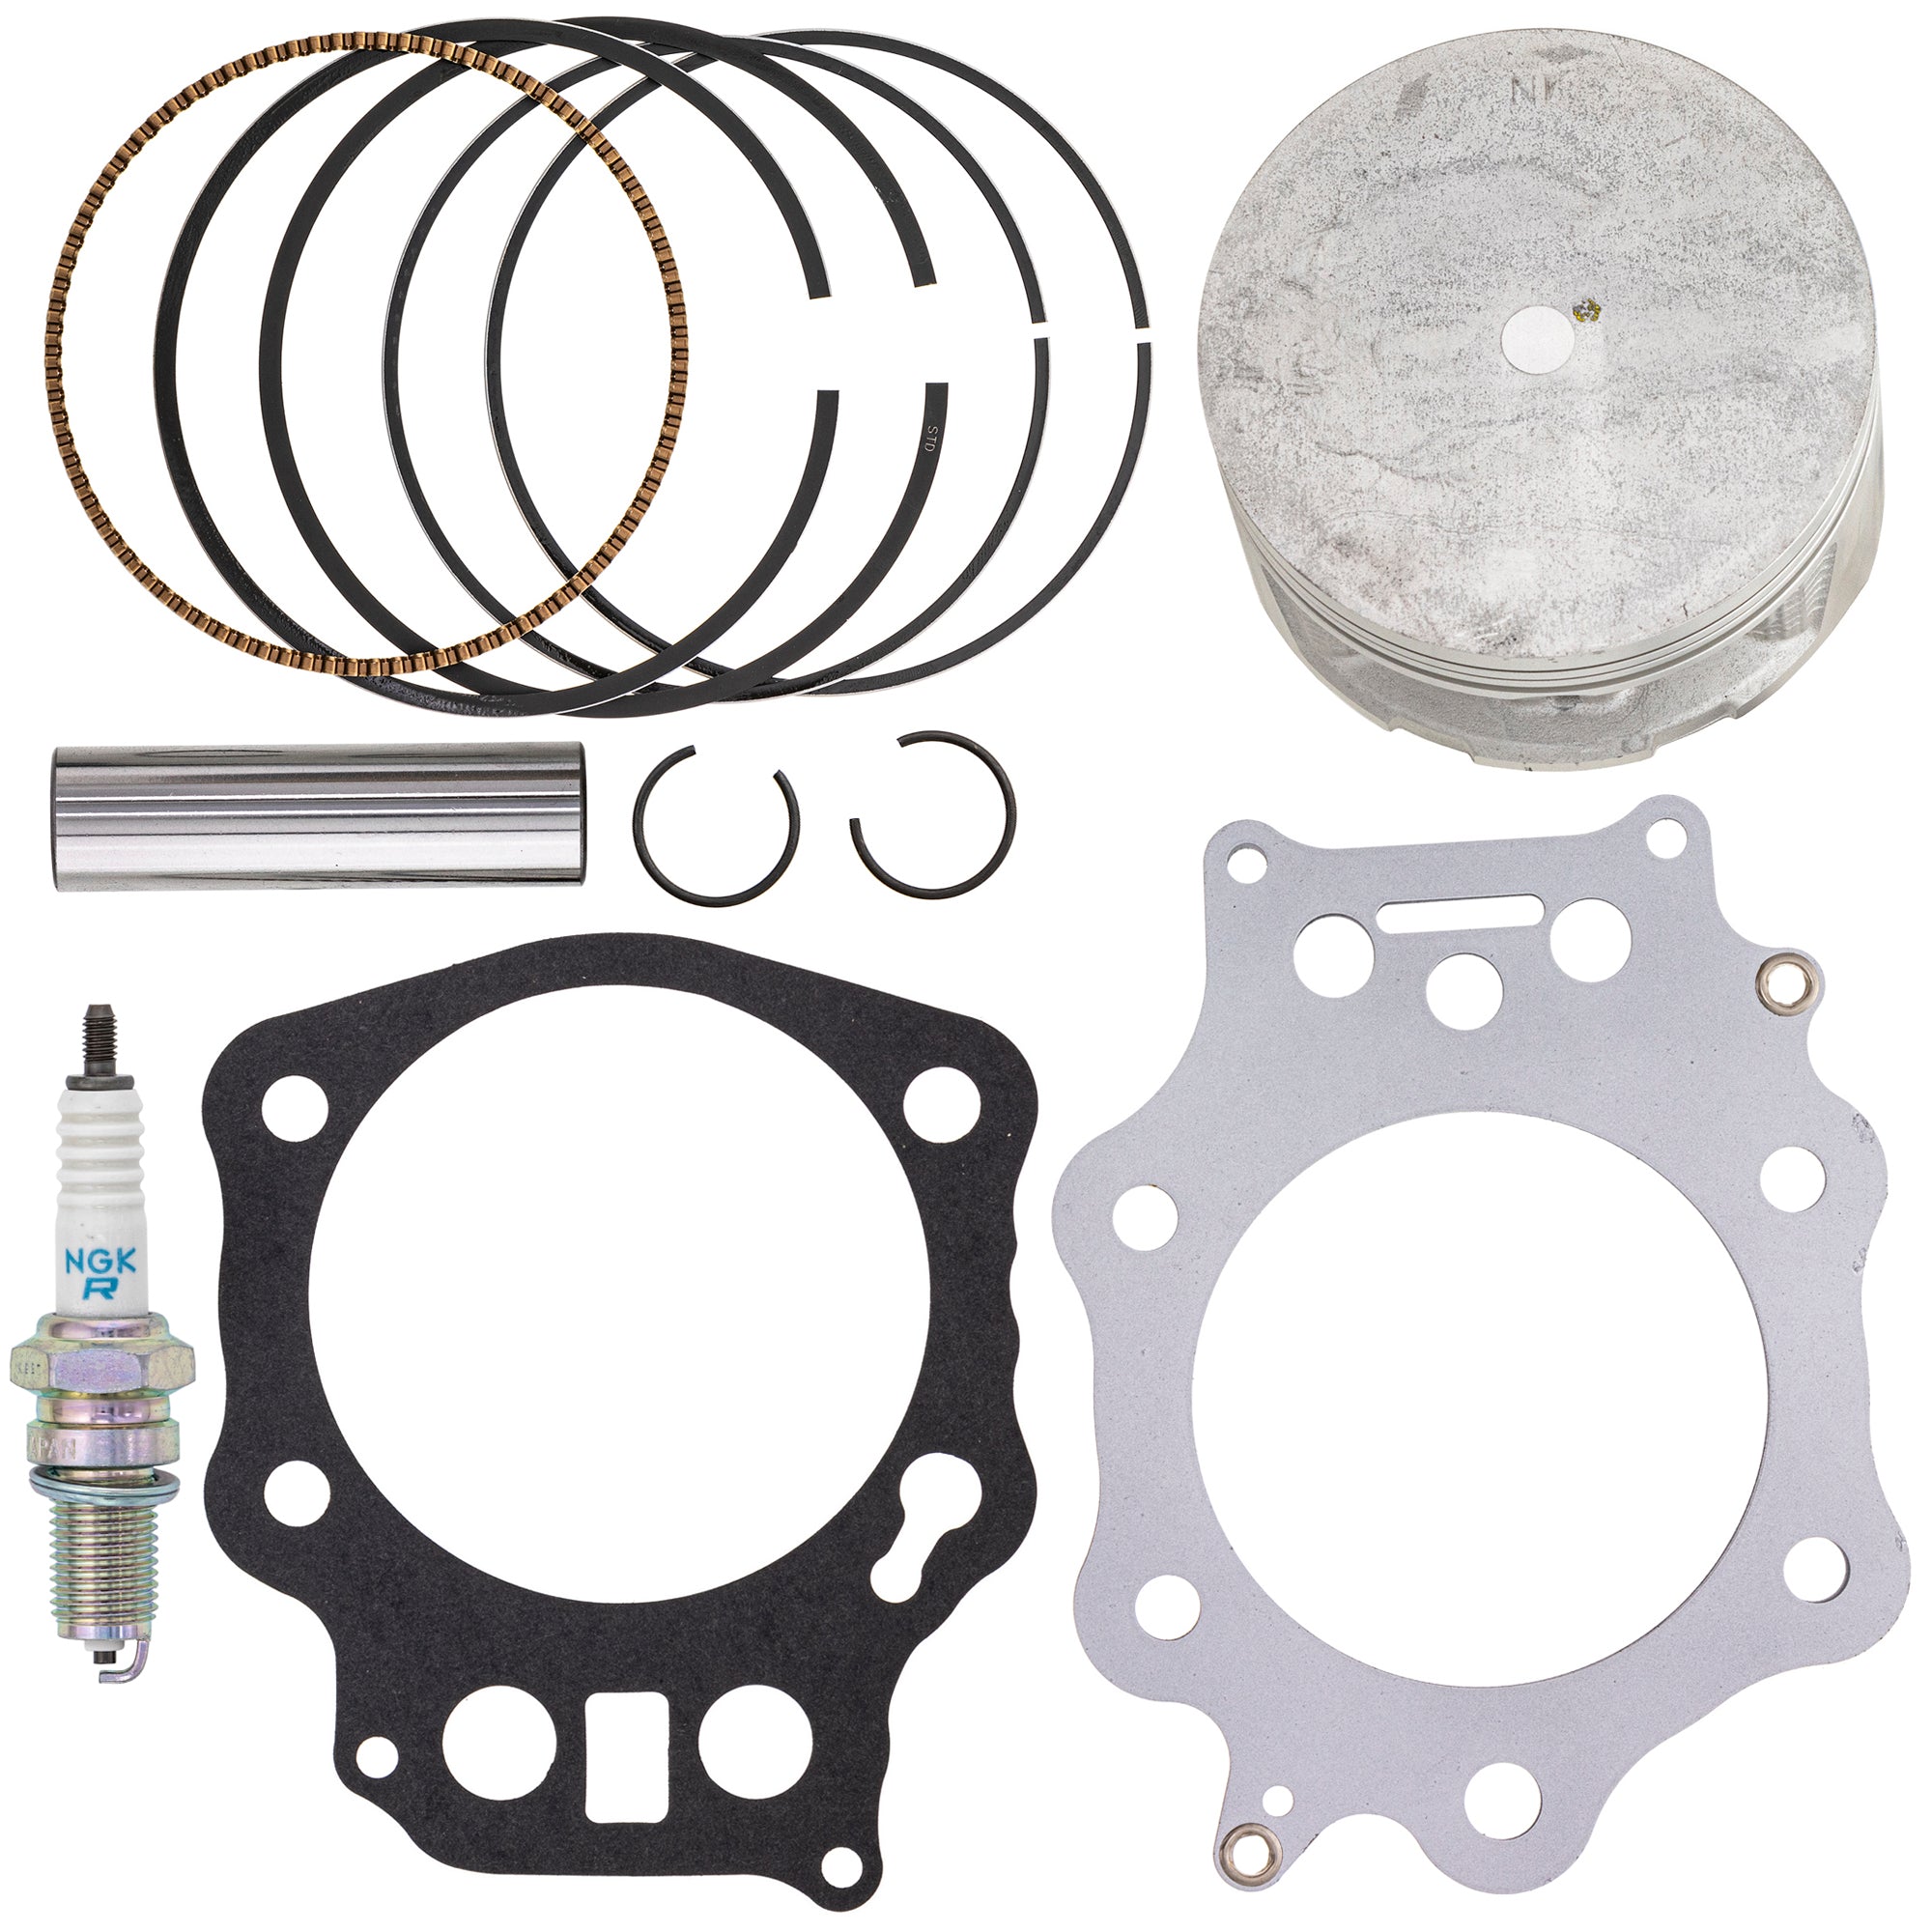 Piston Gasket Kit for zOTHER Honda FourTrax 13112-MAT-000 13111-KL3-670 13111-HN0-A00 NICHE MK1003428